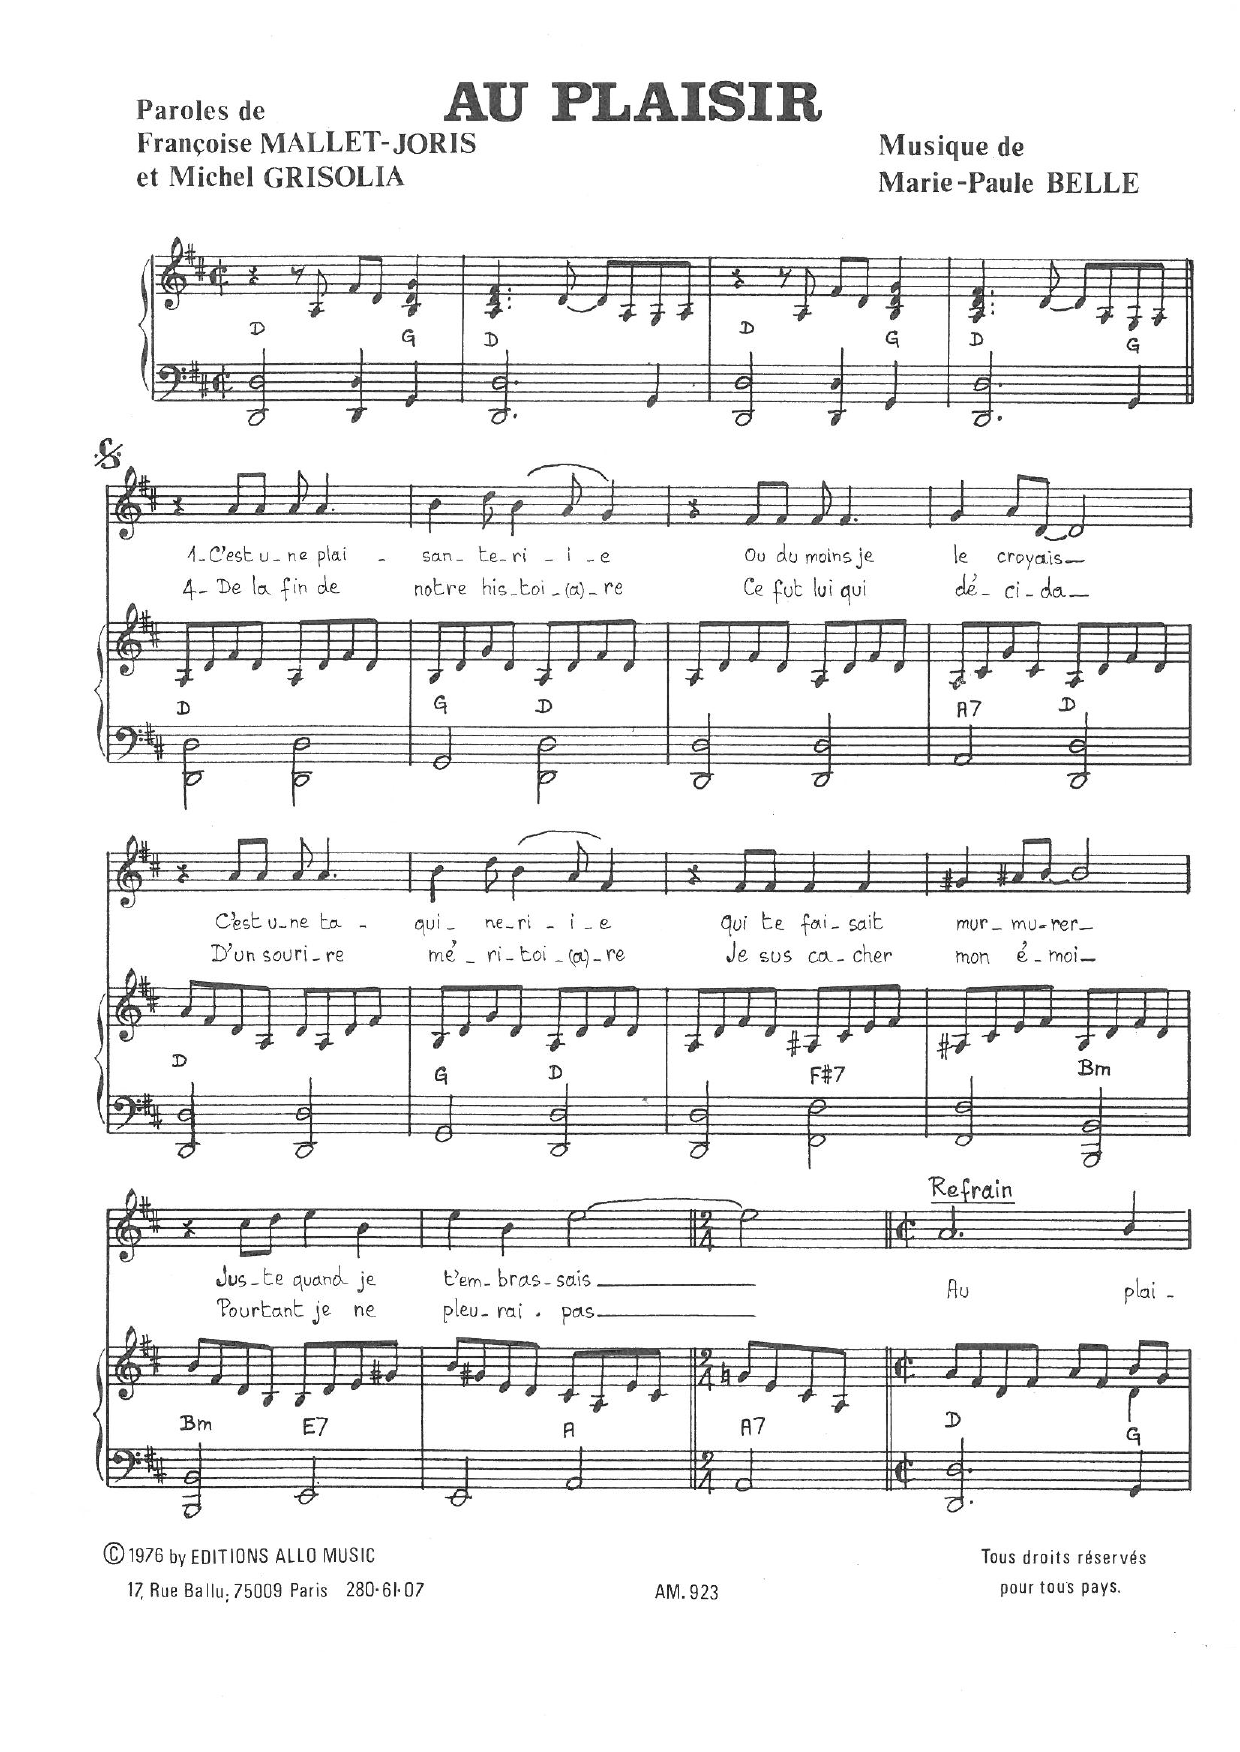 Michel Grisolia, Françoise Mallet-Joris and Marie Paule Belle Au Plaisir Sheet Music Notes & Chords for Piano & Vocal - Download or Print PDF